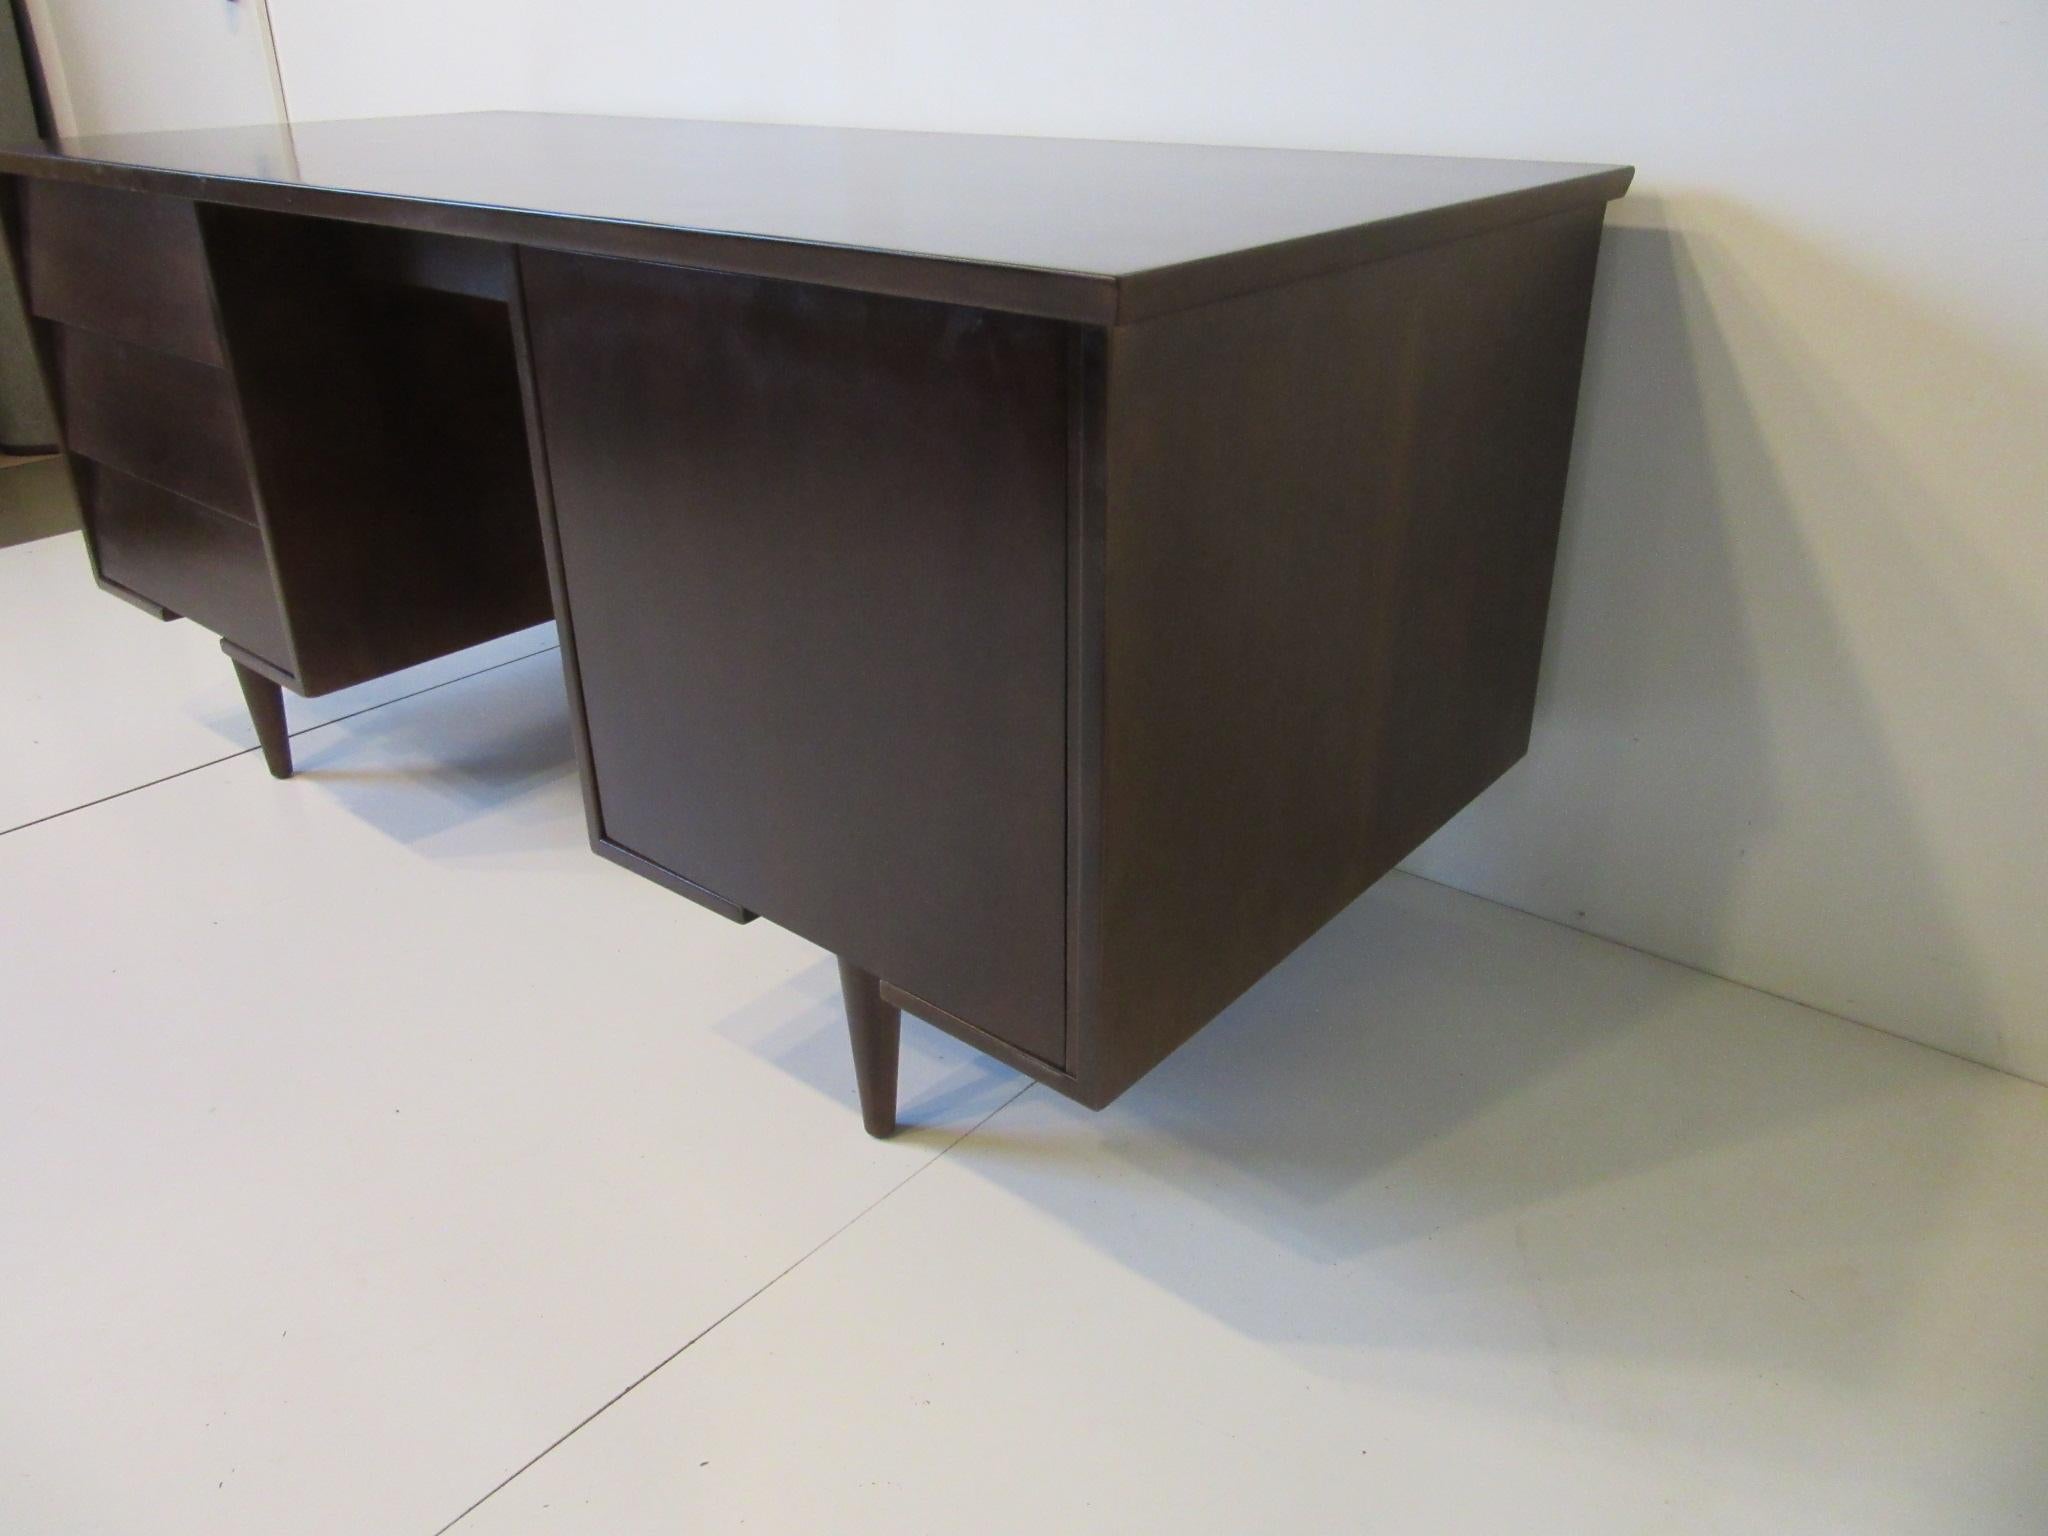 American Midcentury Desk by Mengel Furniture